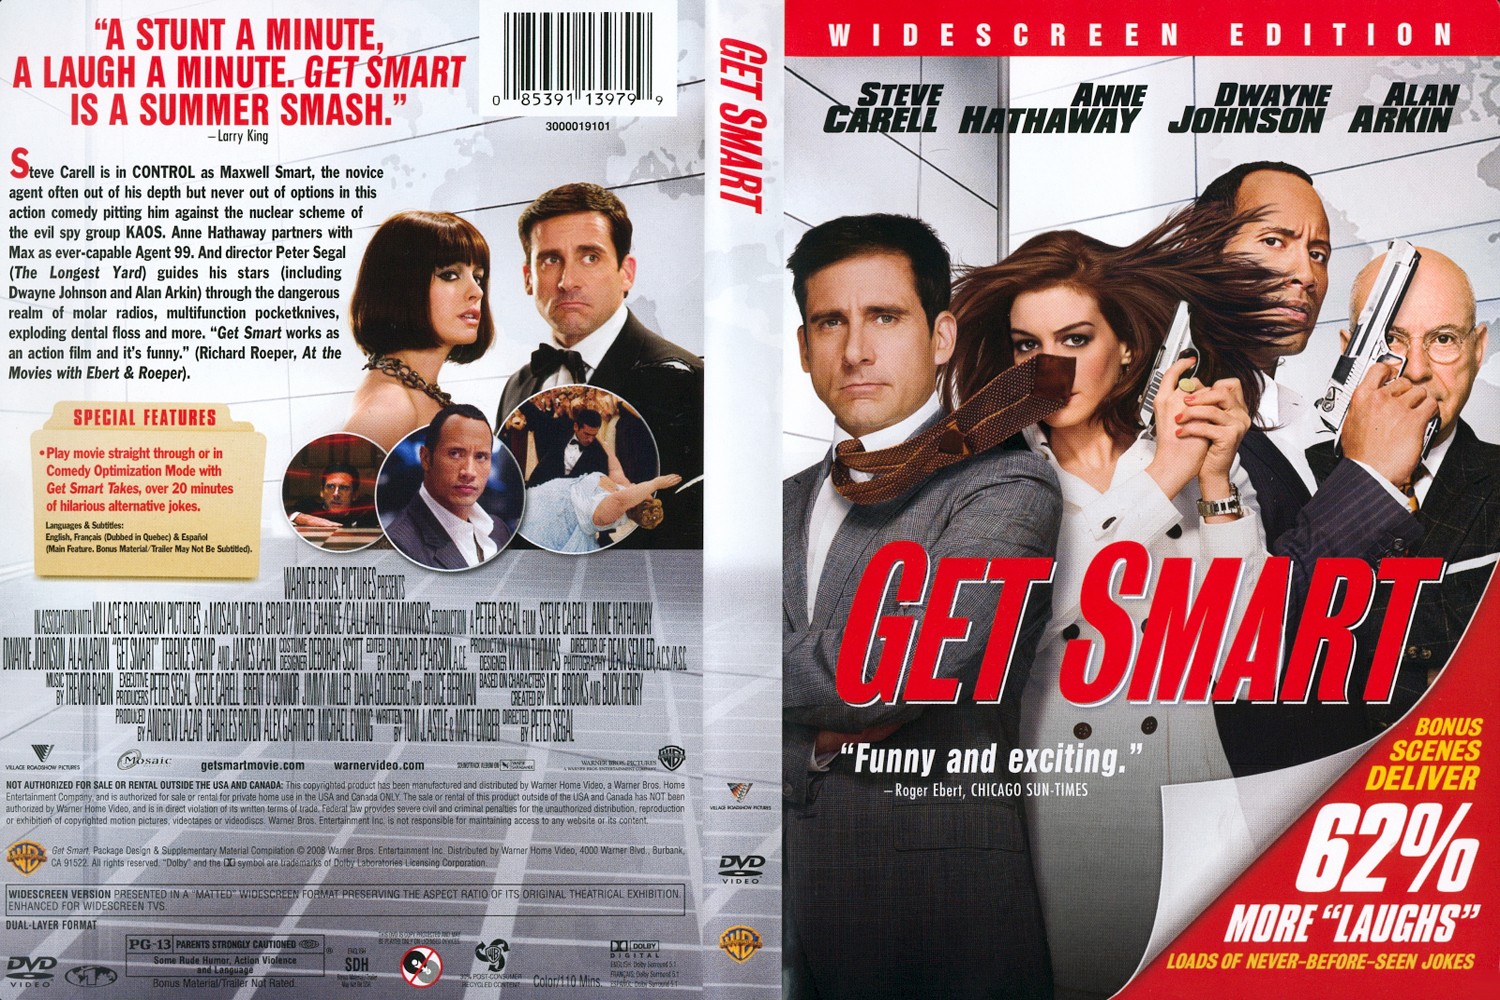 Get Smart 2008. (2008) Get Smart Cover. Get Smart 2008 Warner Bros. Smart movies